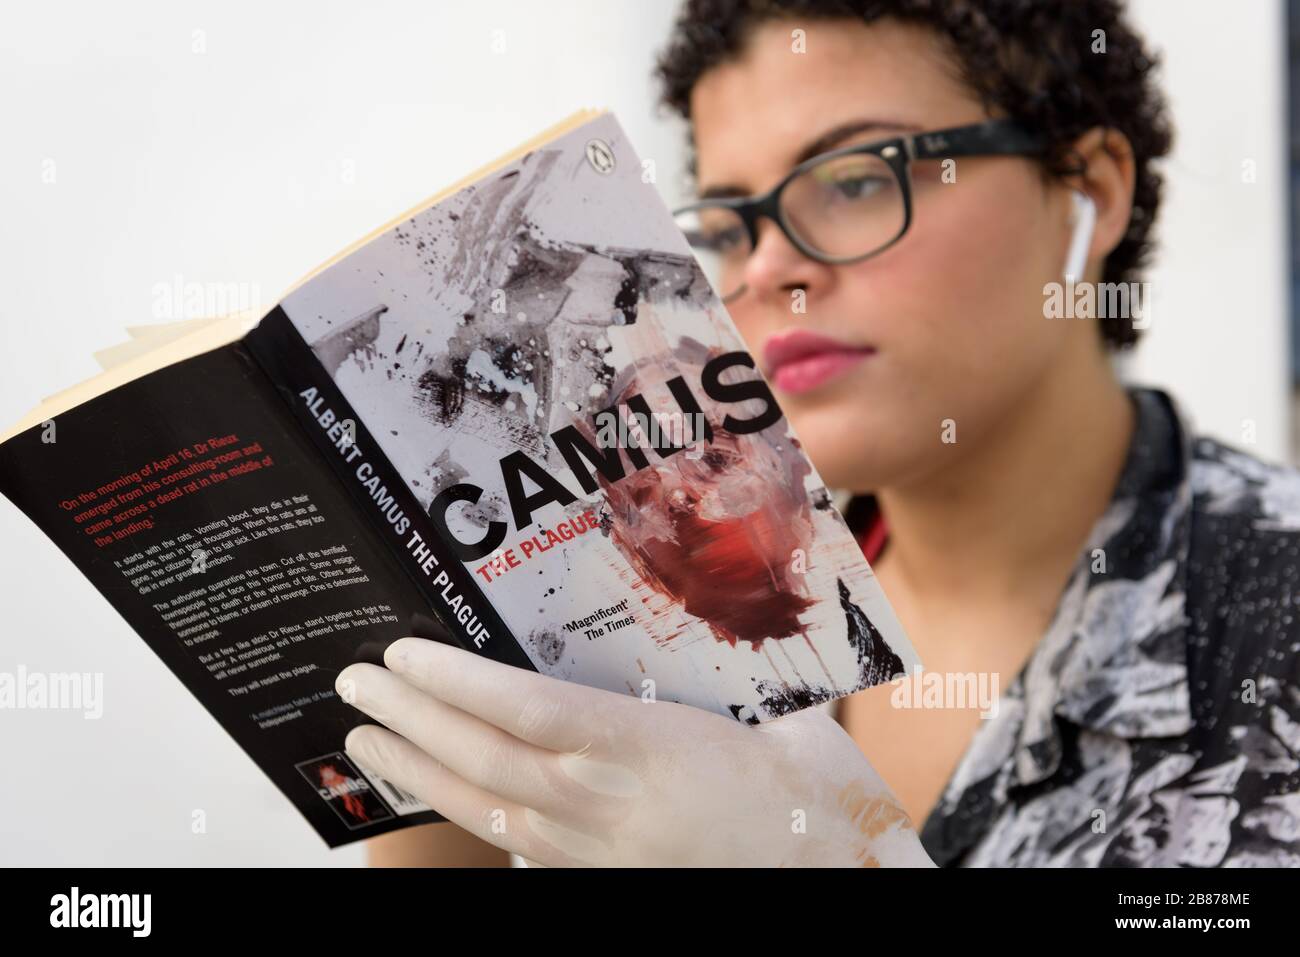 Le roman du philosophe existentiel et absurdiste Albert Camus, la peste, connaît une renaissance dans la pandémie mondiale de Coronavirus de 2020 Banque D'Images